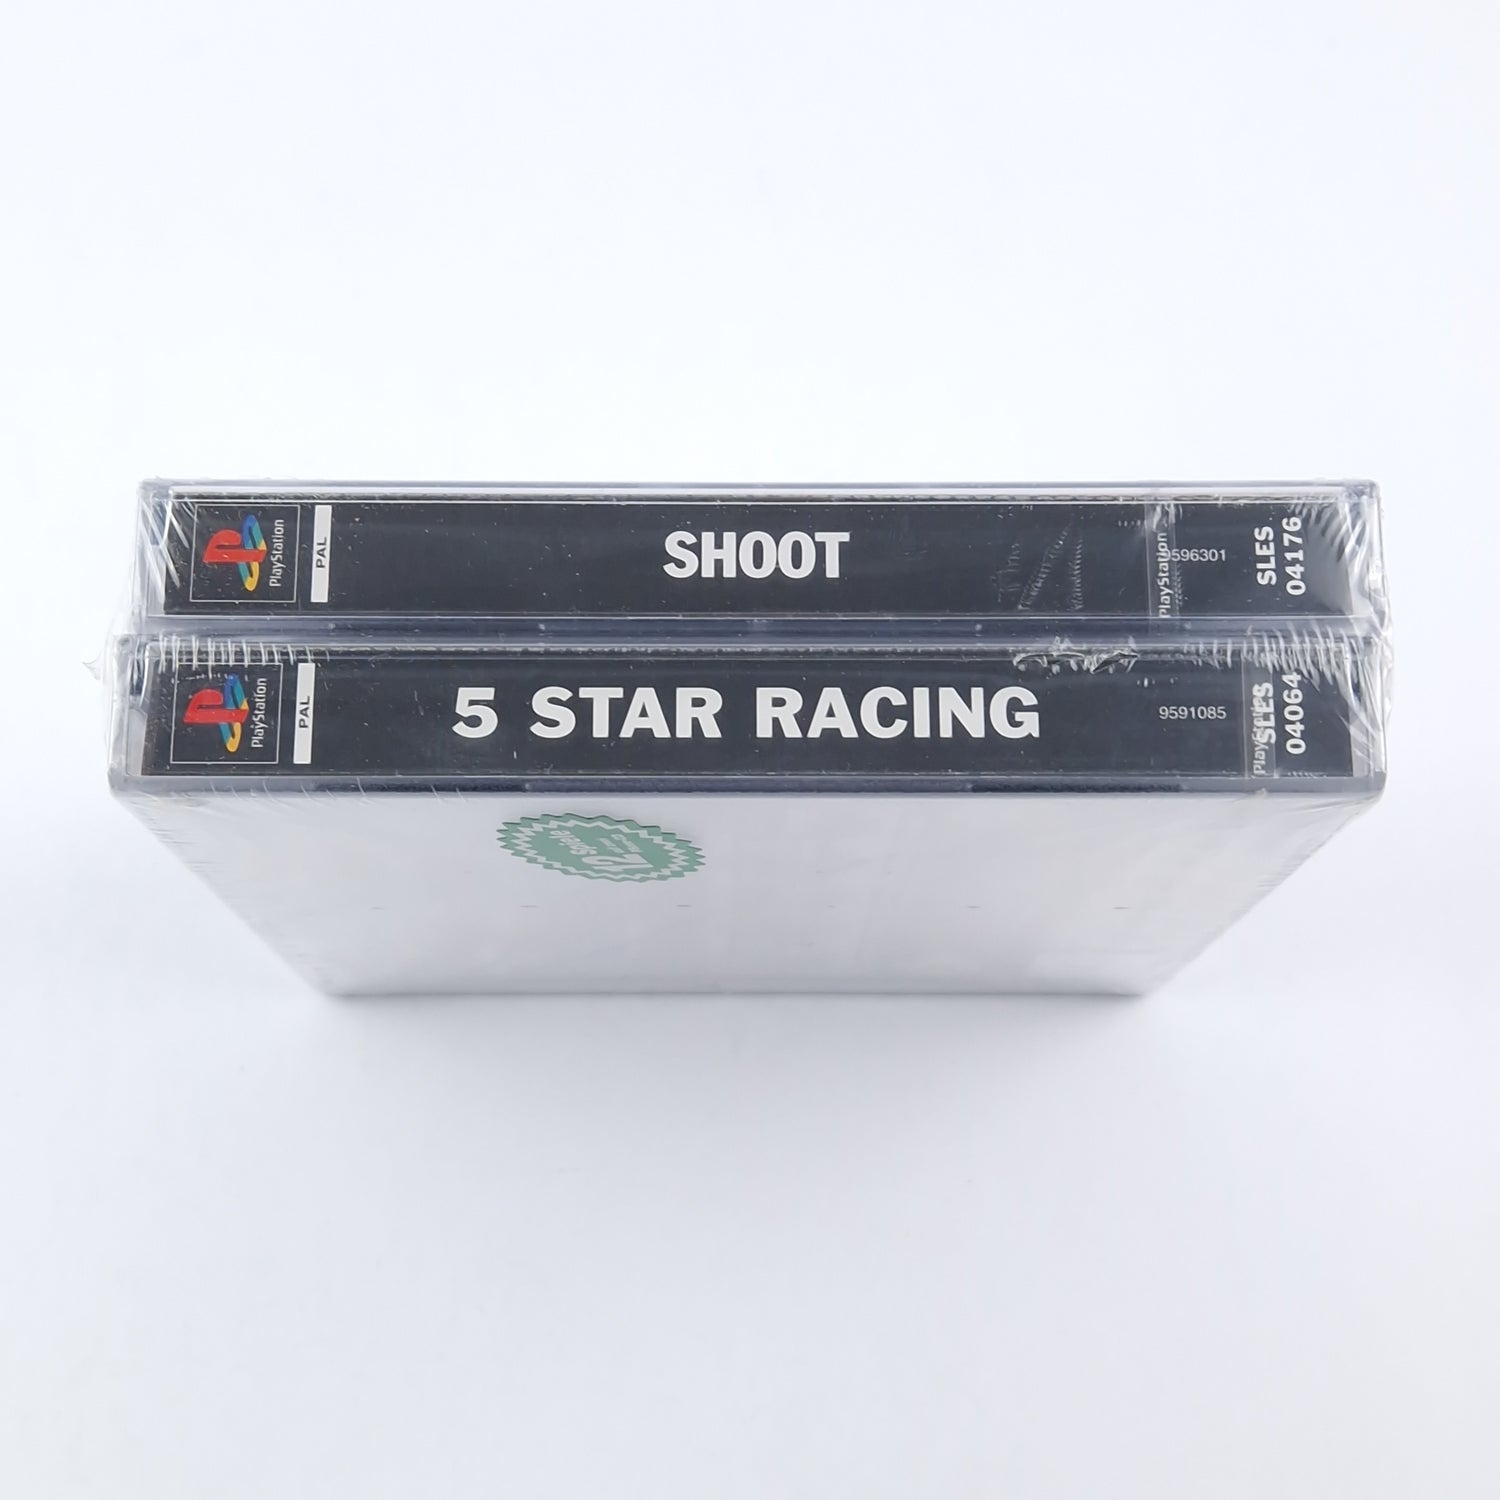 Playstation Spiel : 12 Spiele auf zwei PSone-CD / 5 Star Racing + Shoot PS1 NEU